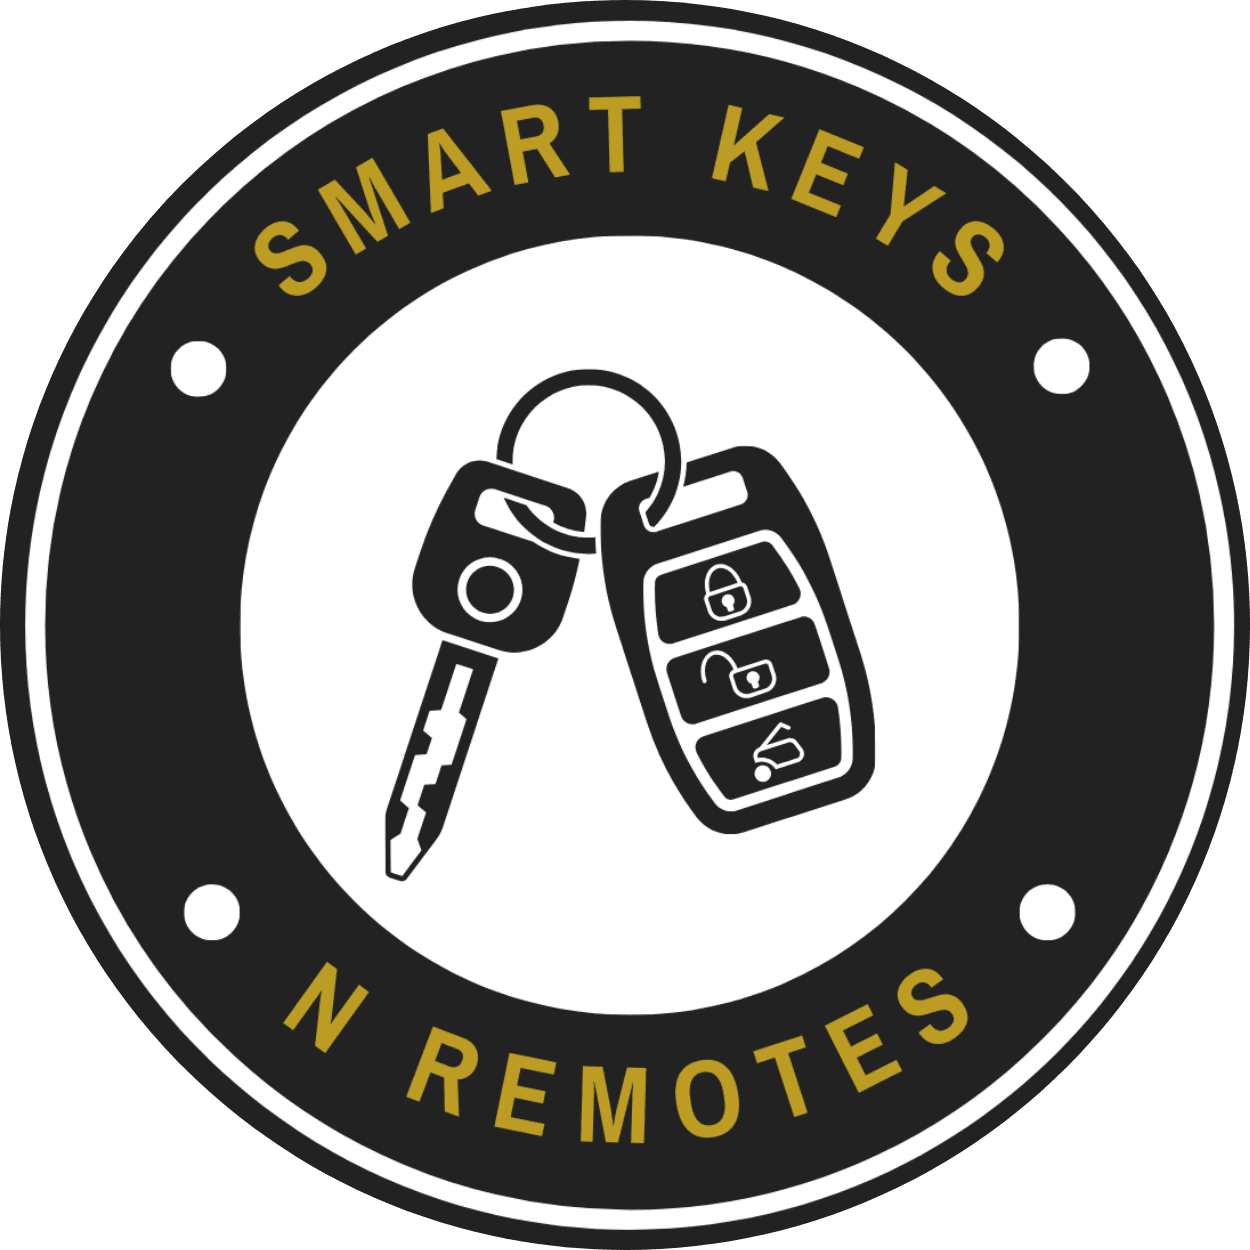 Smart Keys N Remotes LLC